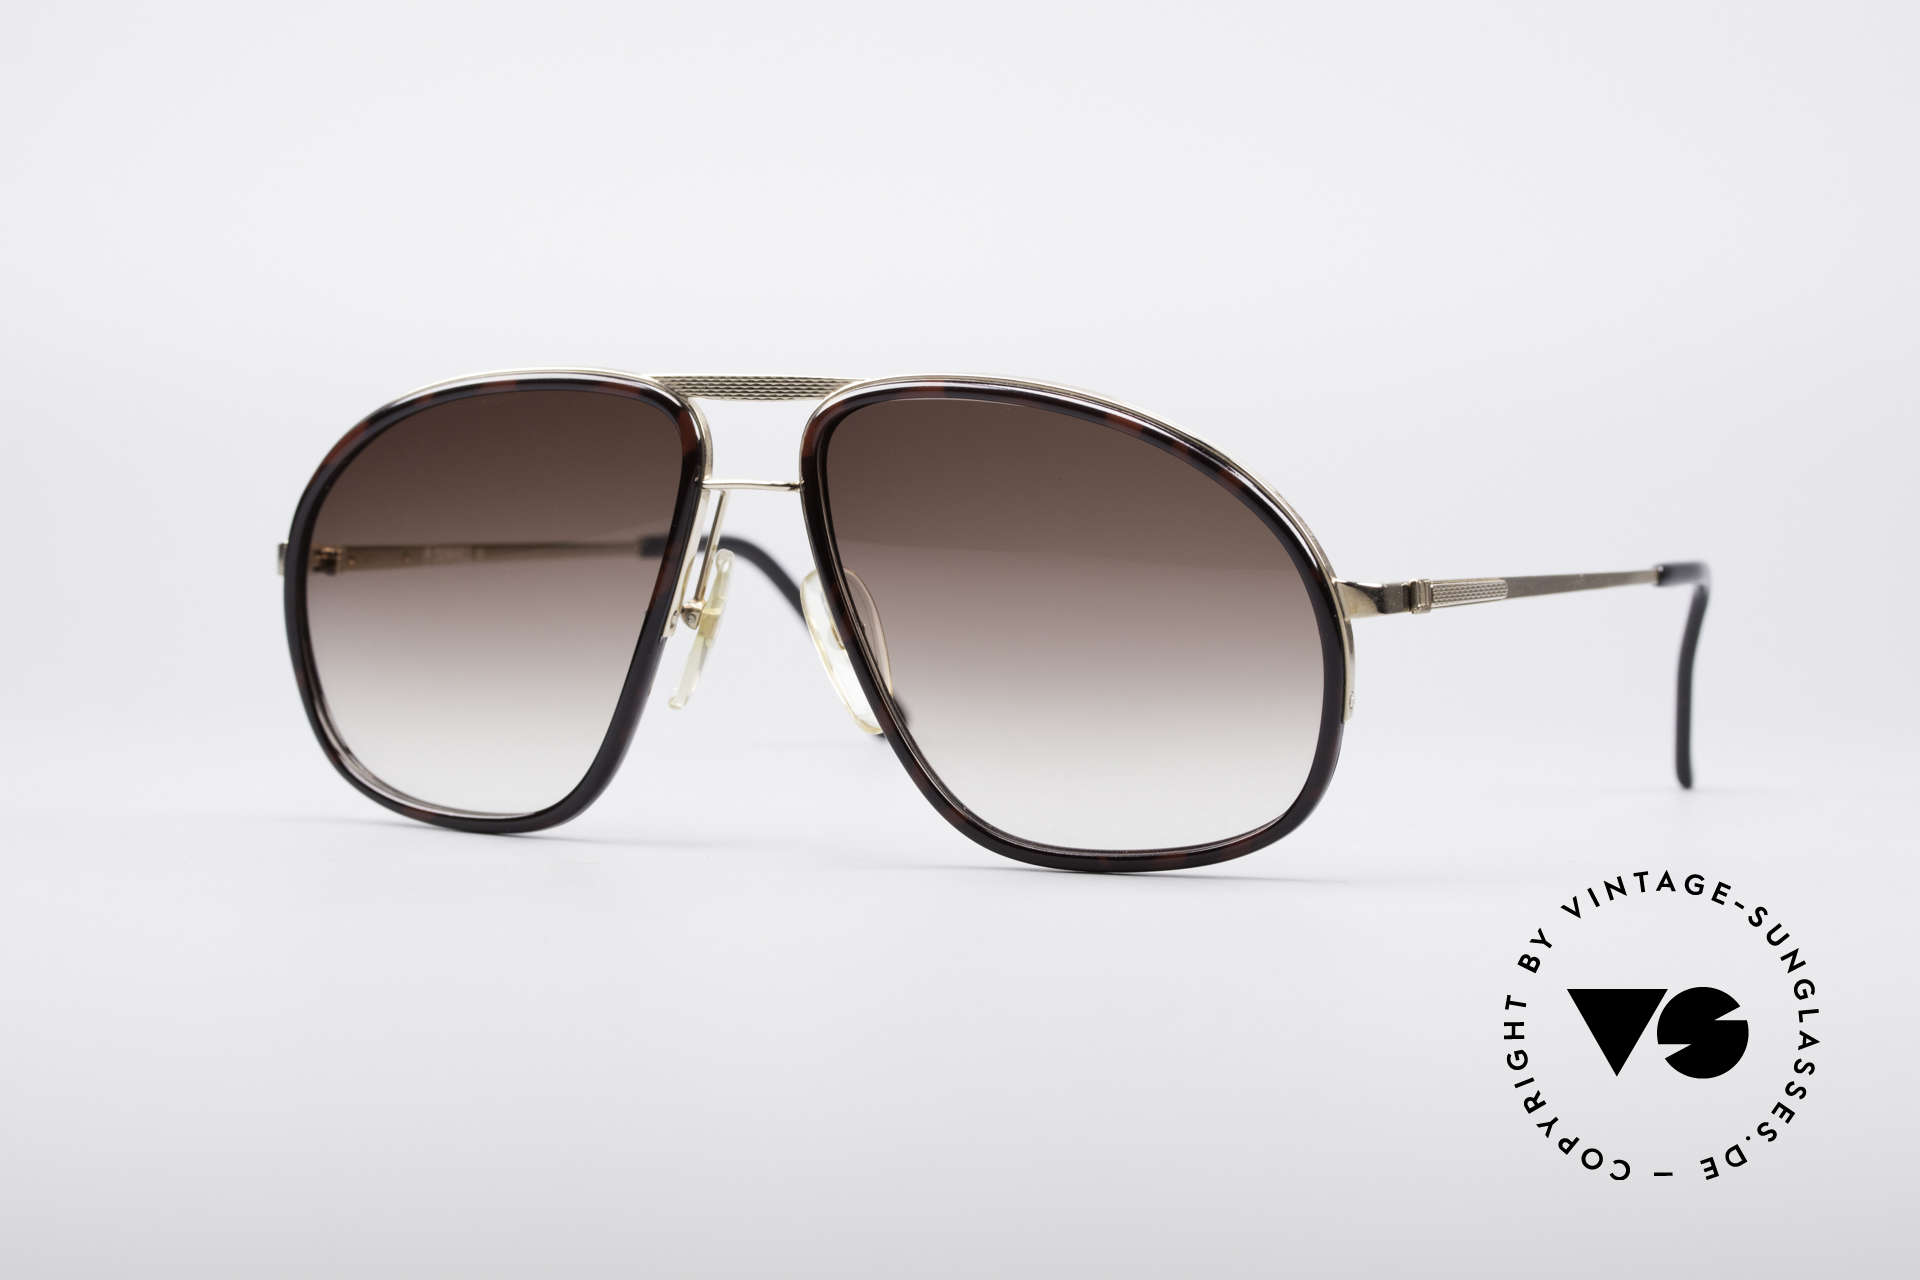 Sunglasses Dunhill 6093 Luxury Aviator Shades